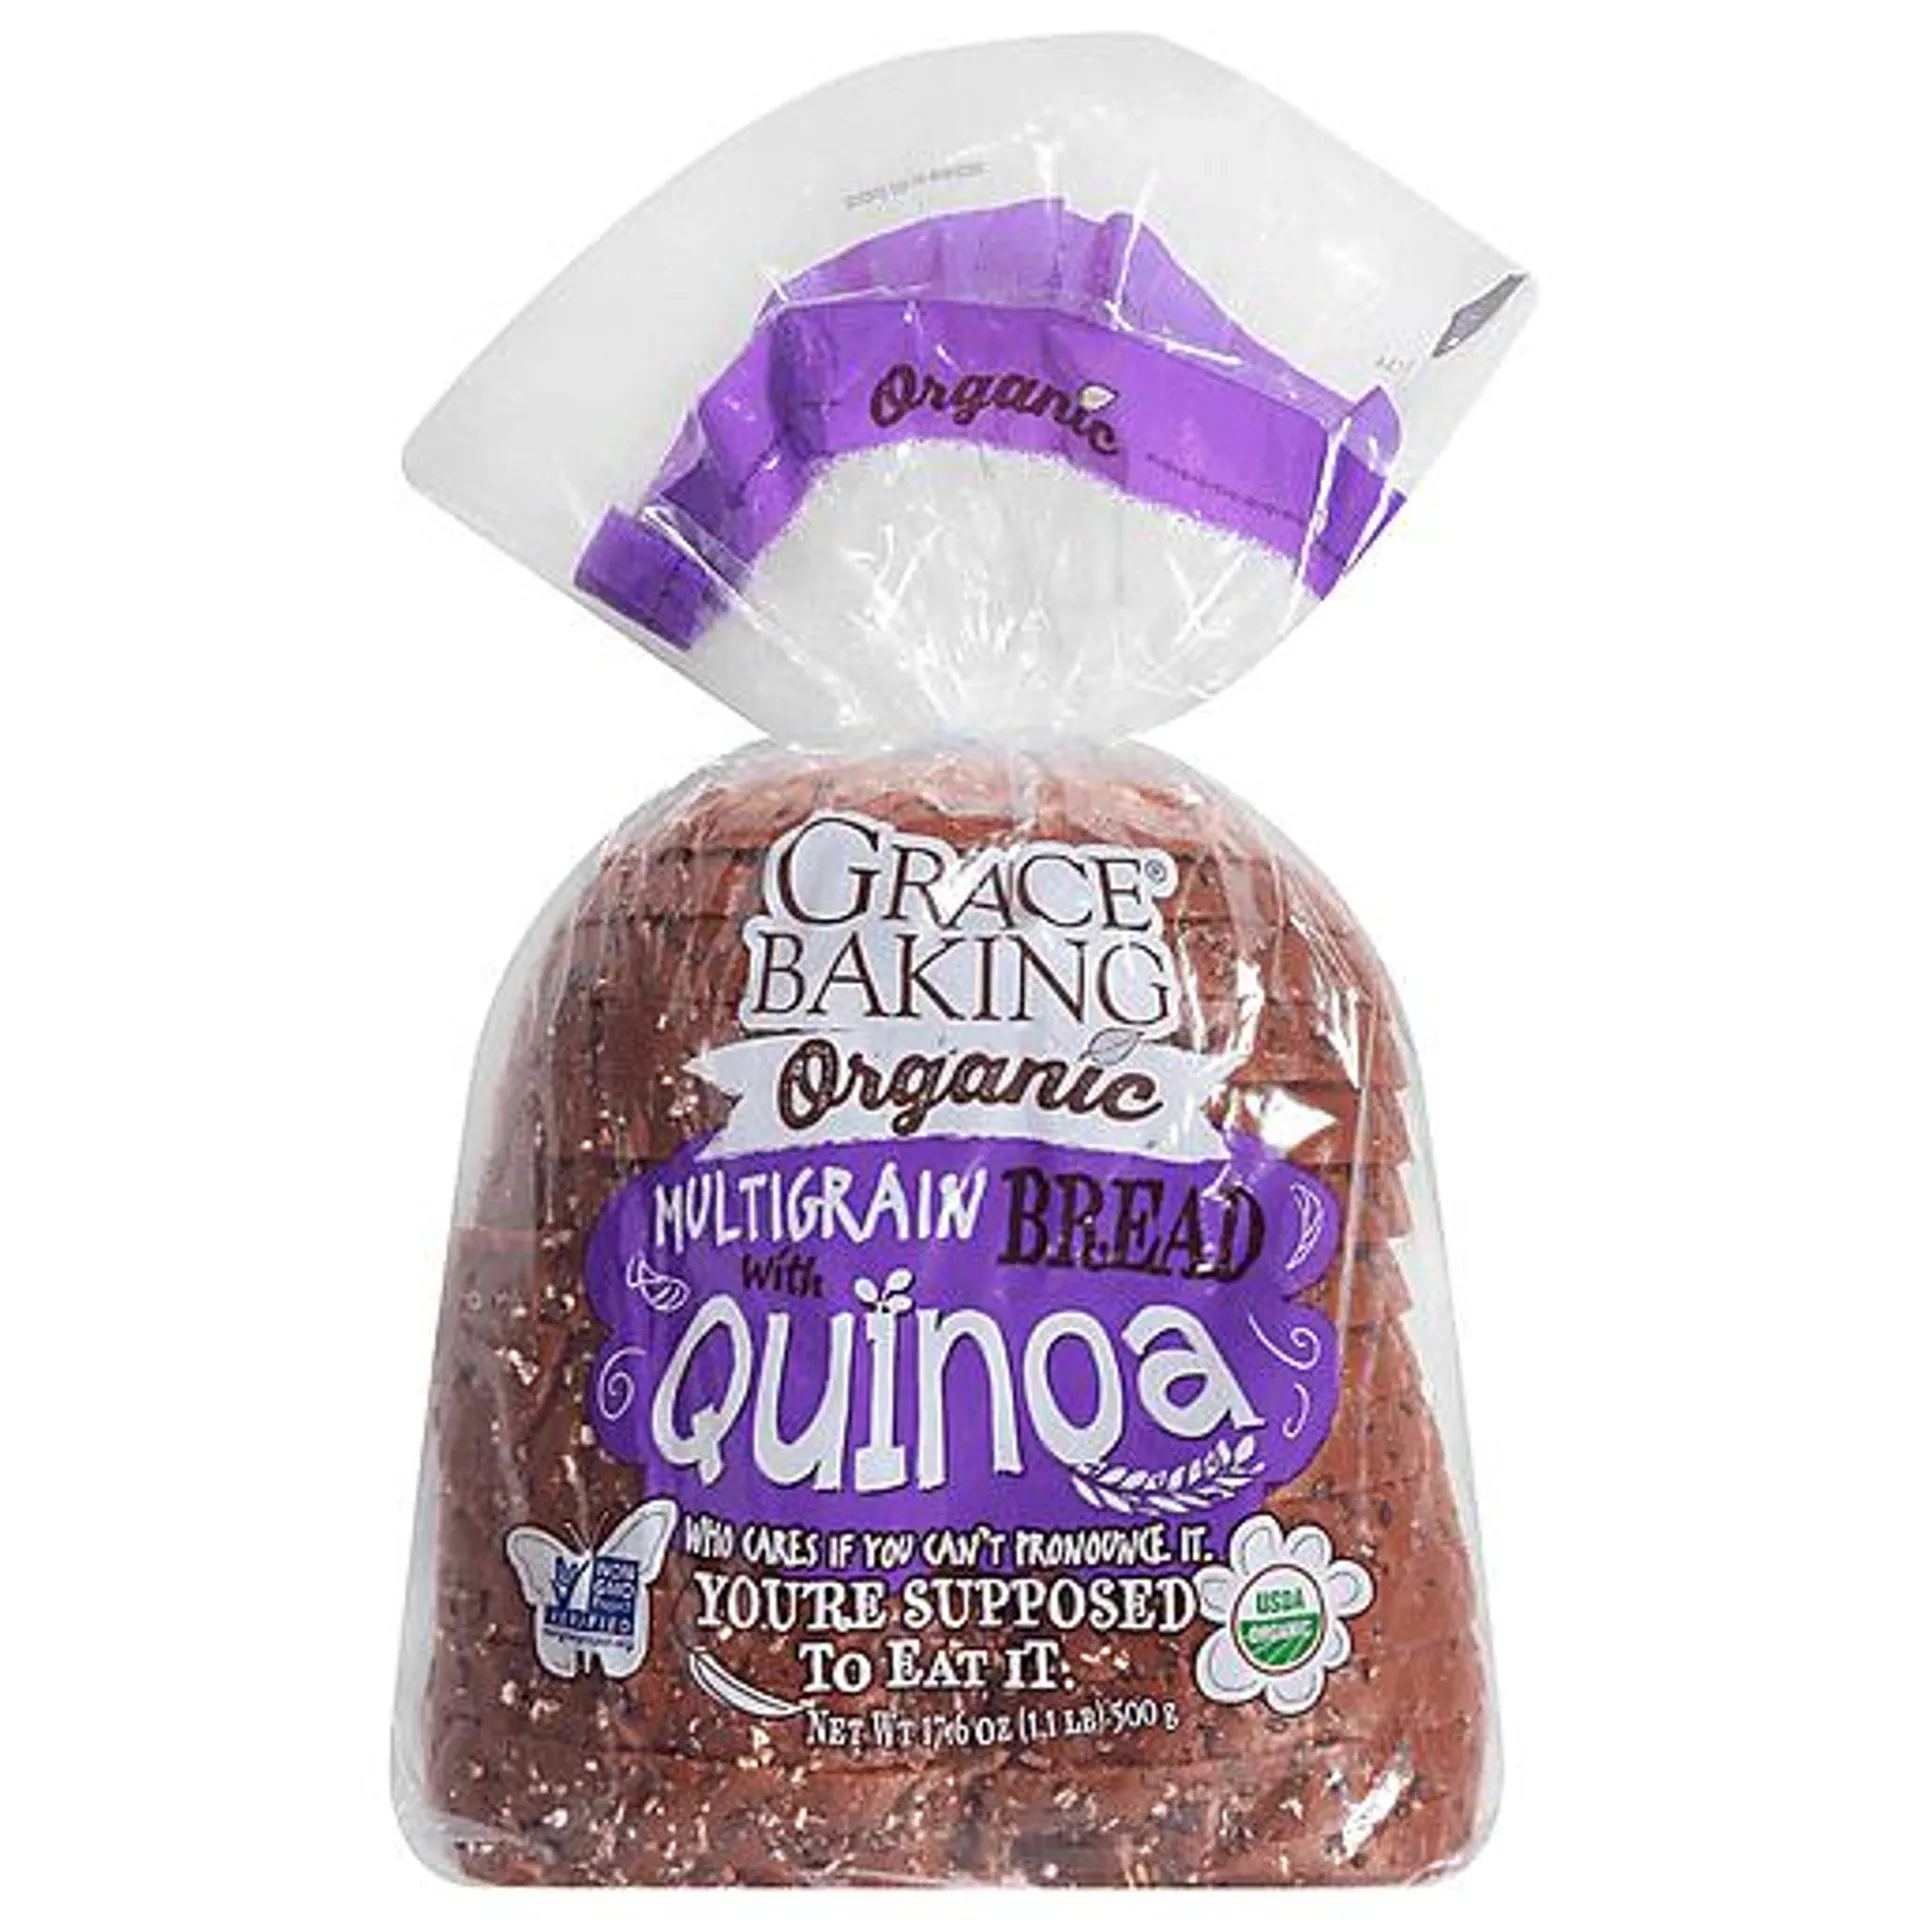 Grace Baking - Organic Multigrain Bread with Quinoa